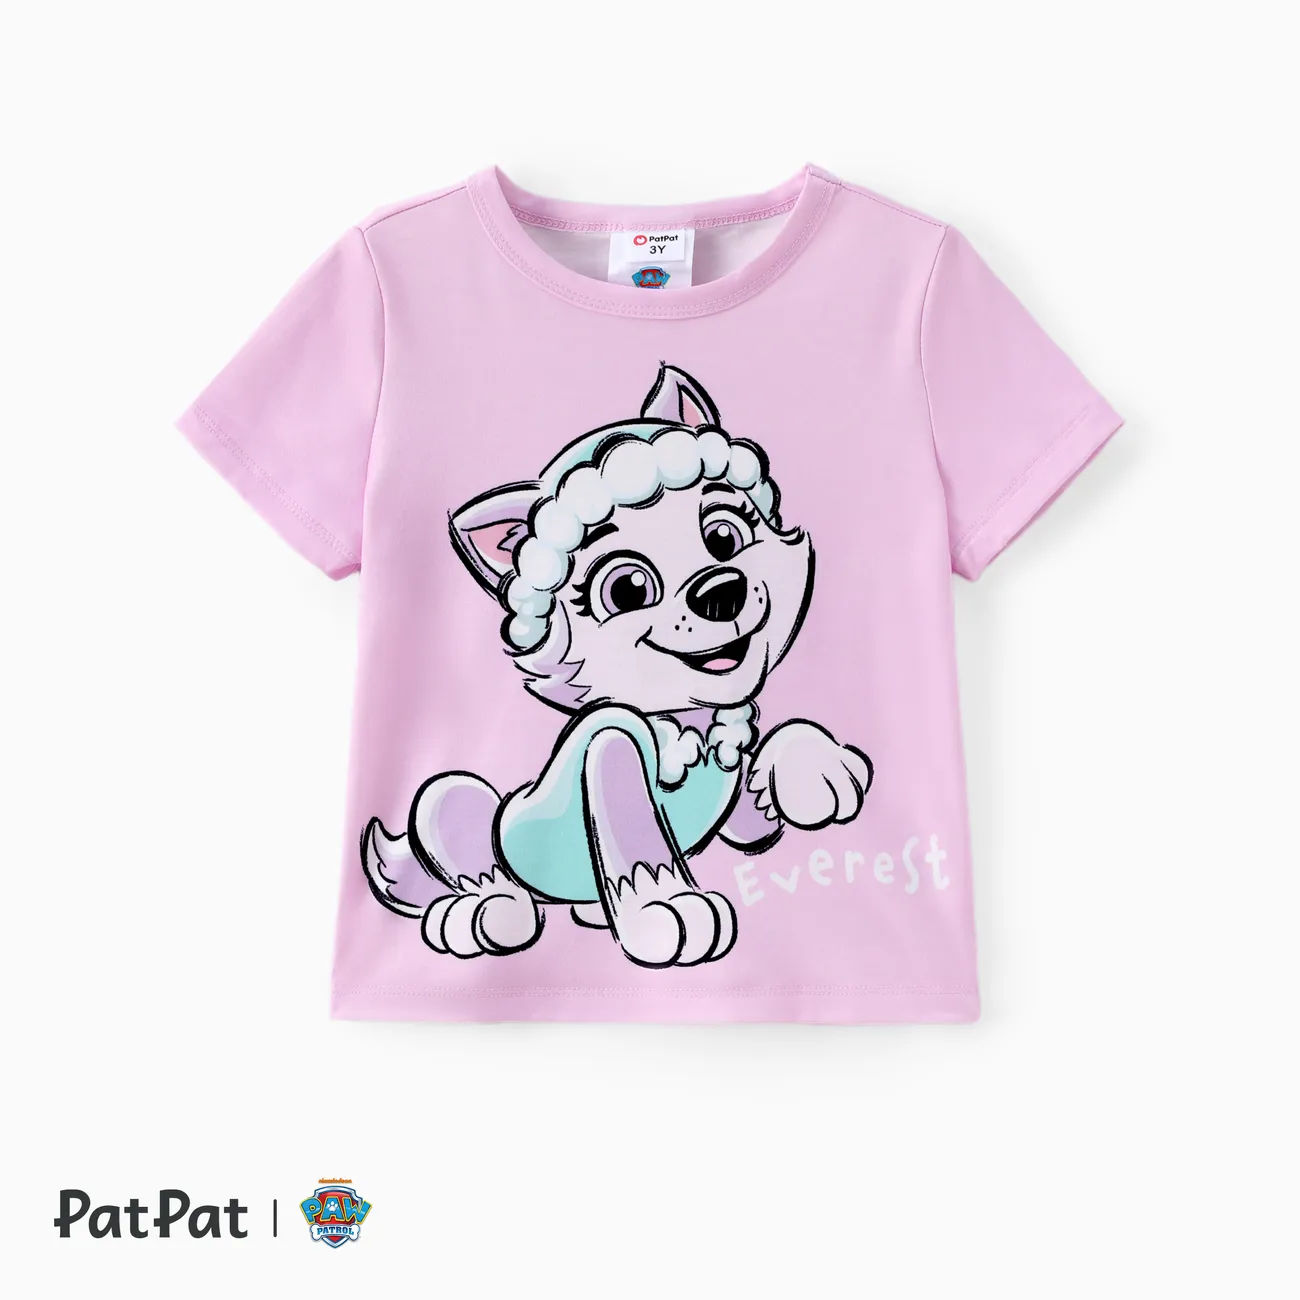 La Pat’ Patrouille Unisexe Enfantin T-Shirt Violet Clair big image 1